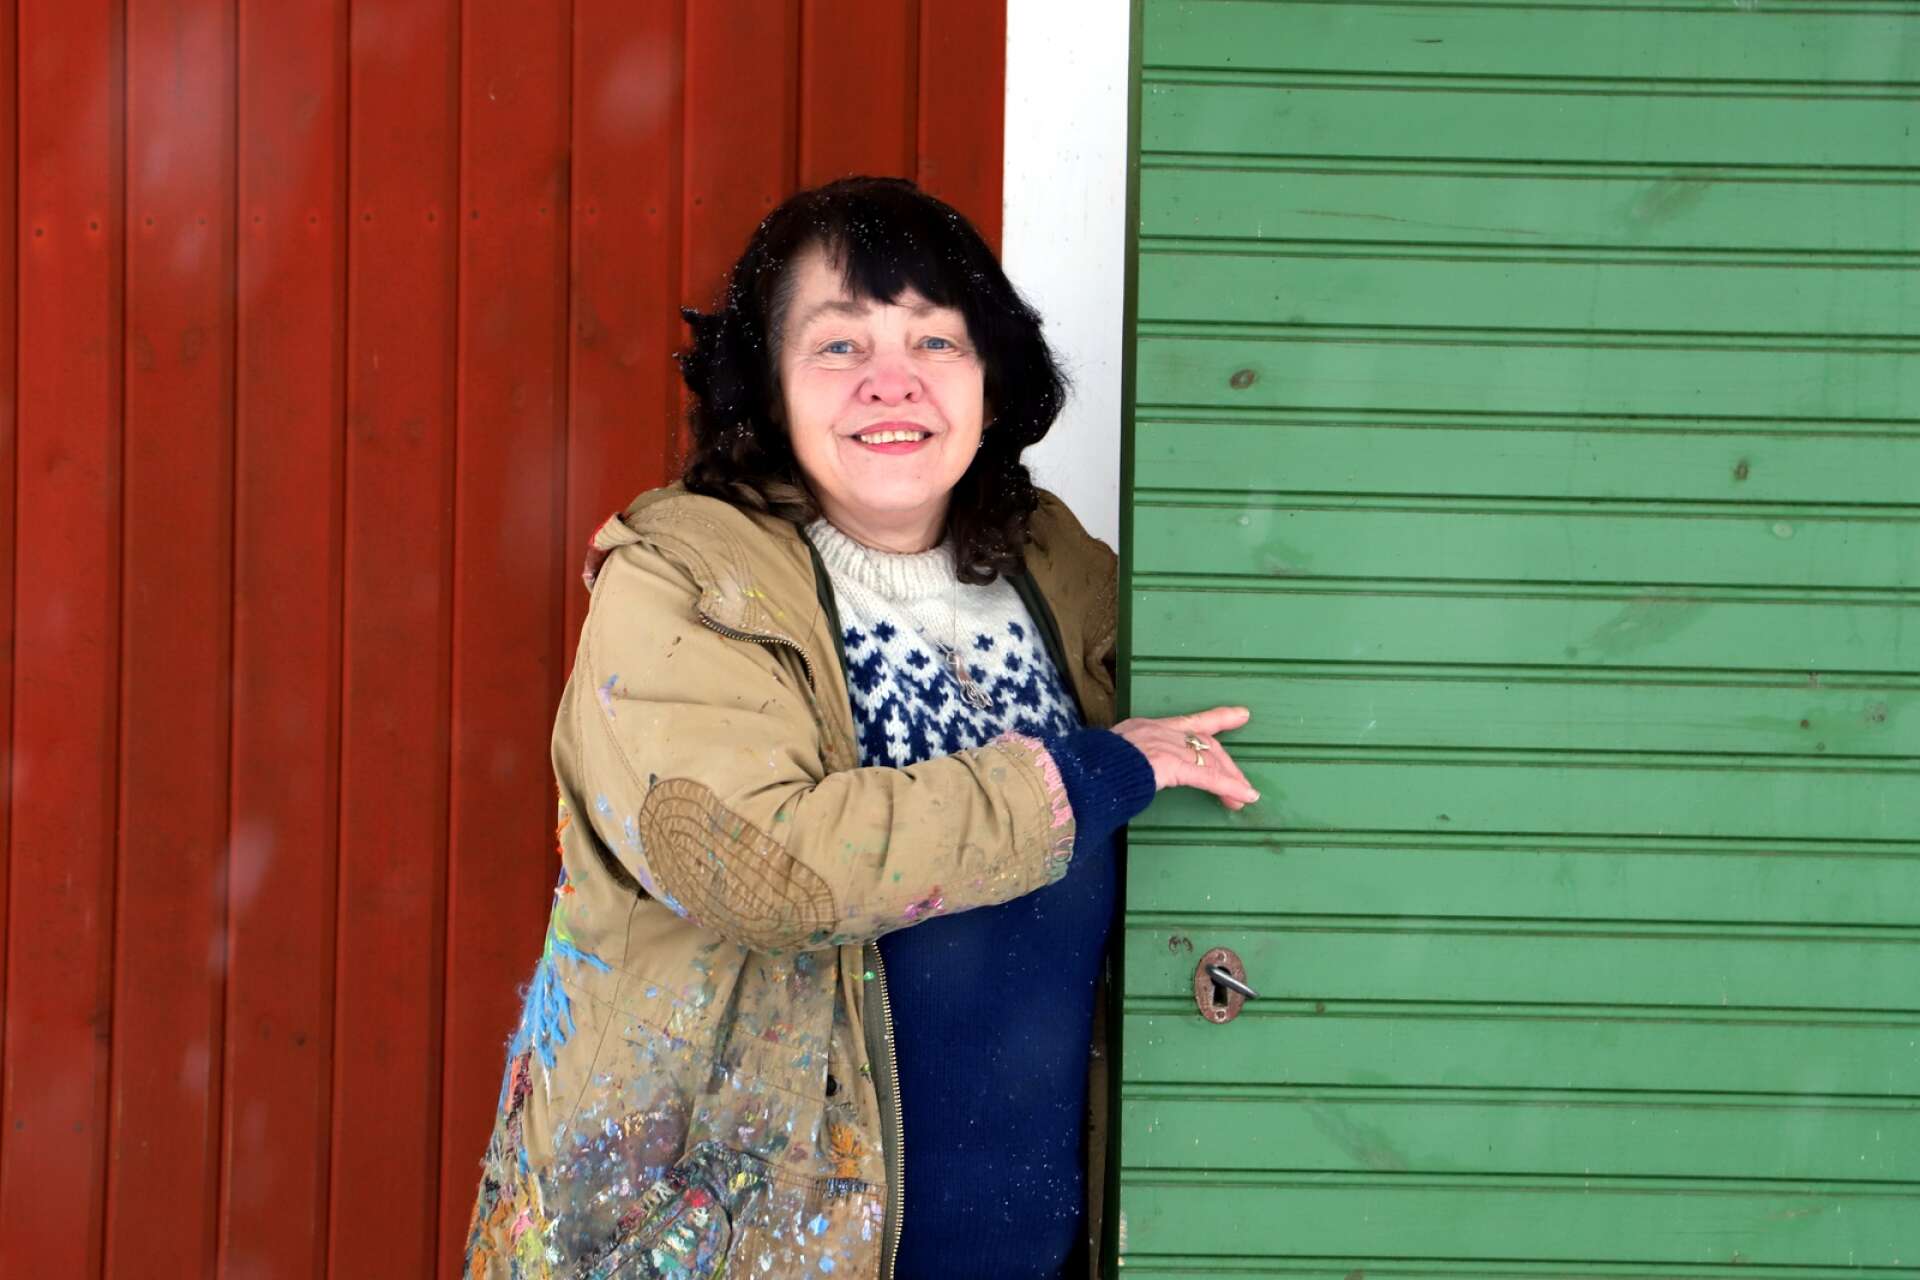 Konstnären Marja i Myrom har avlidit i sviterna av cancer. Hon blev 65 år gammal.